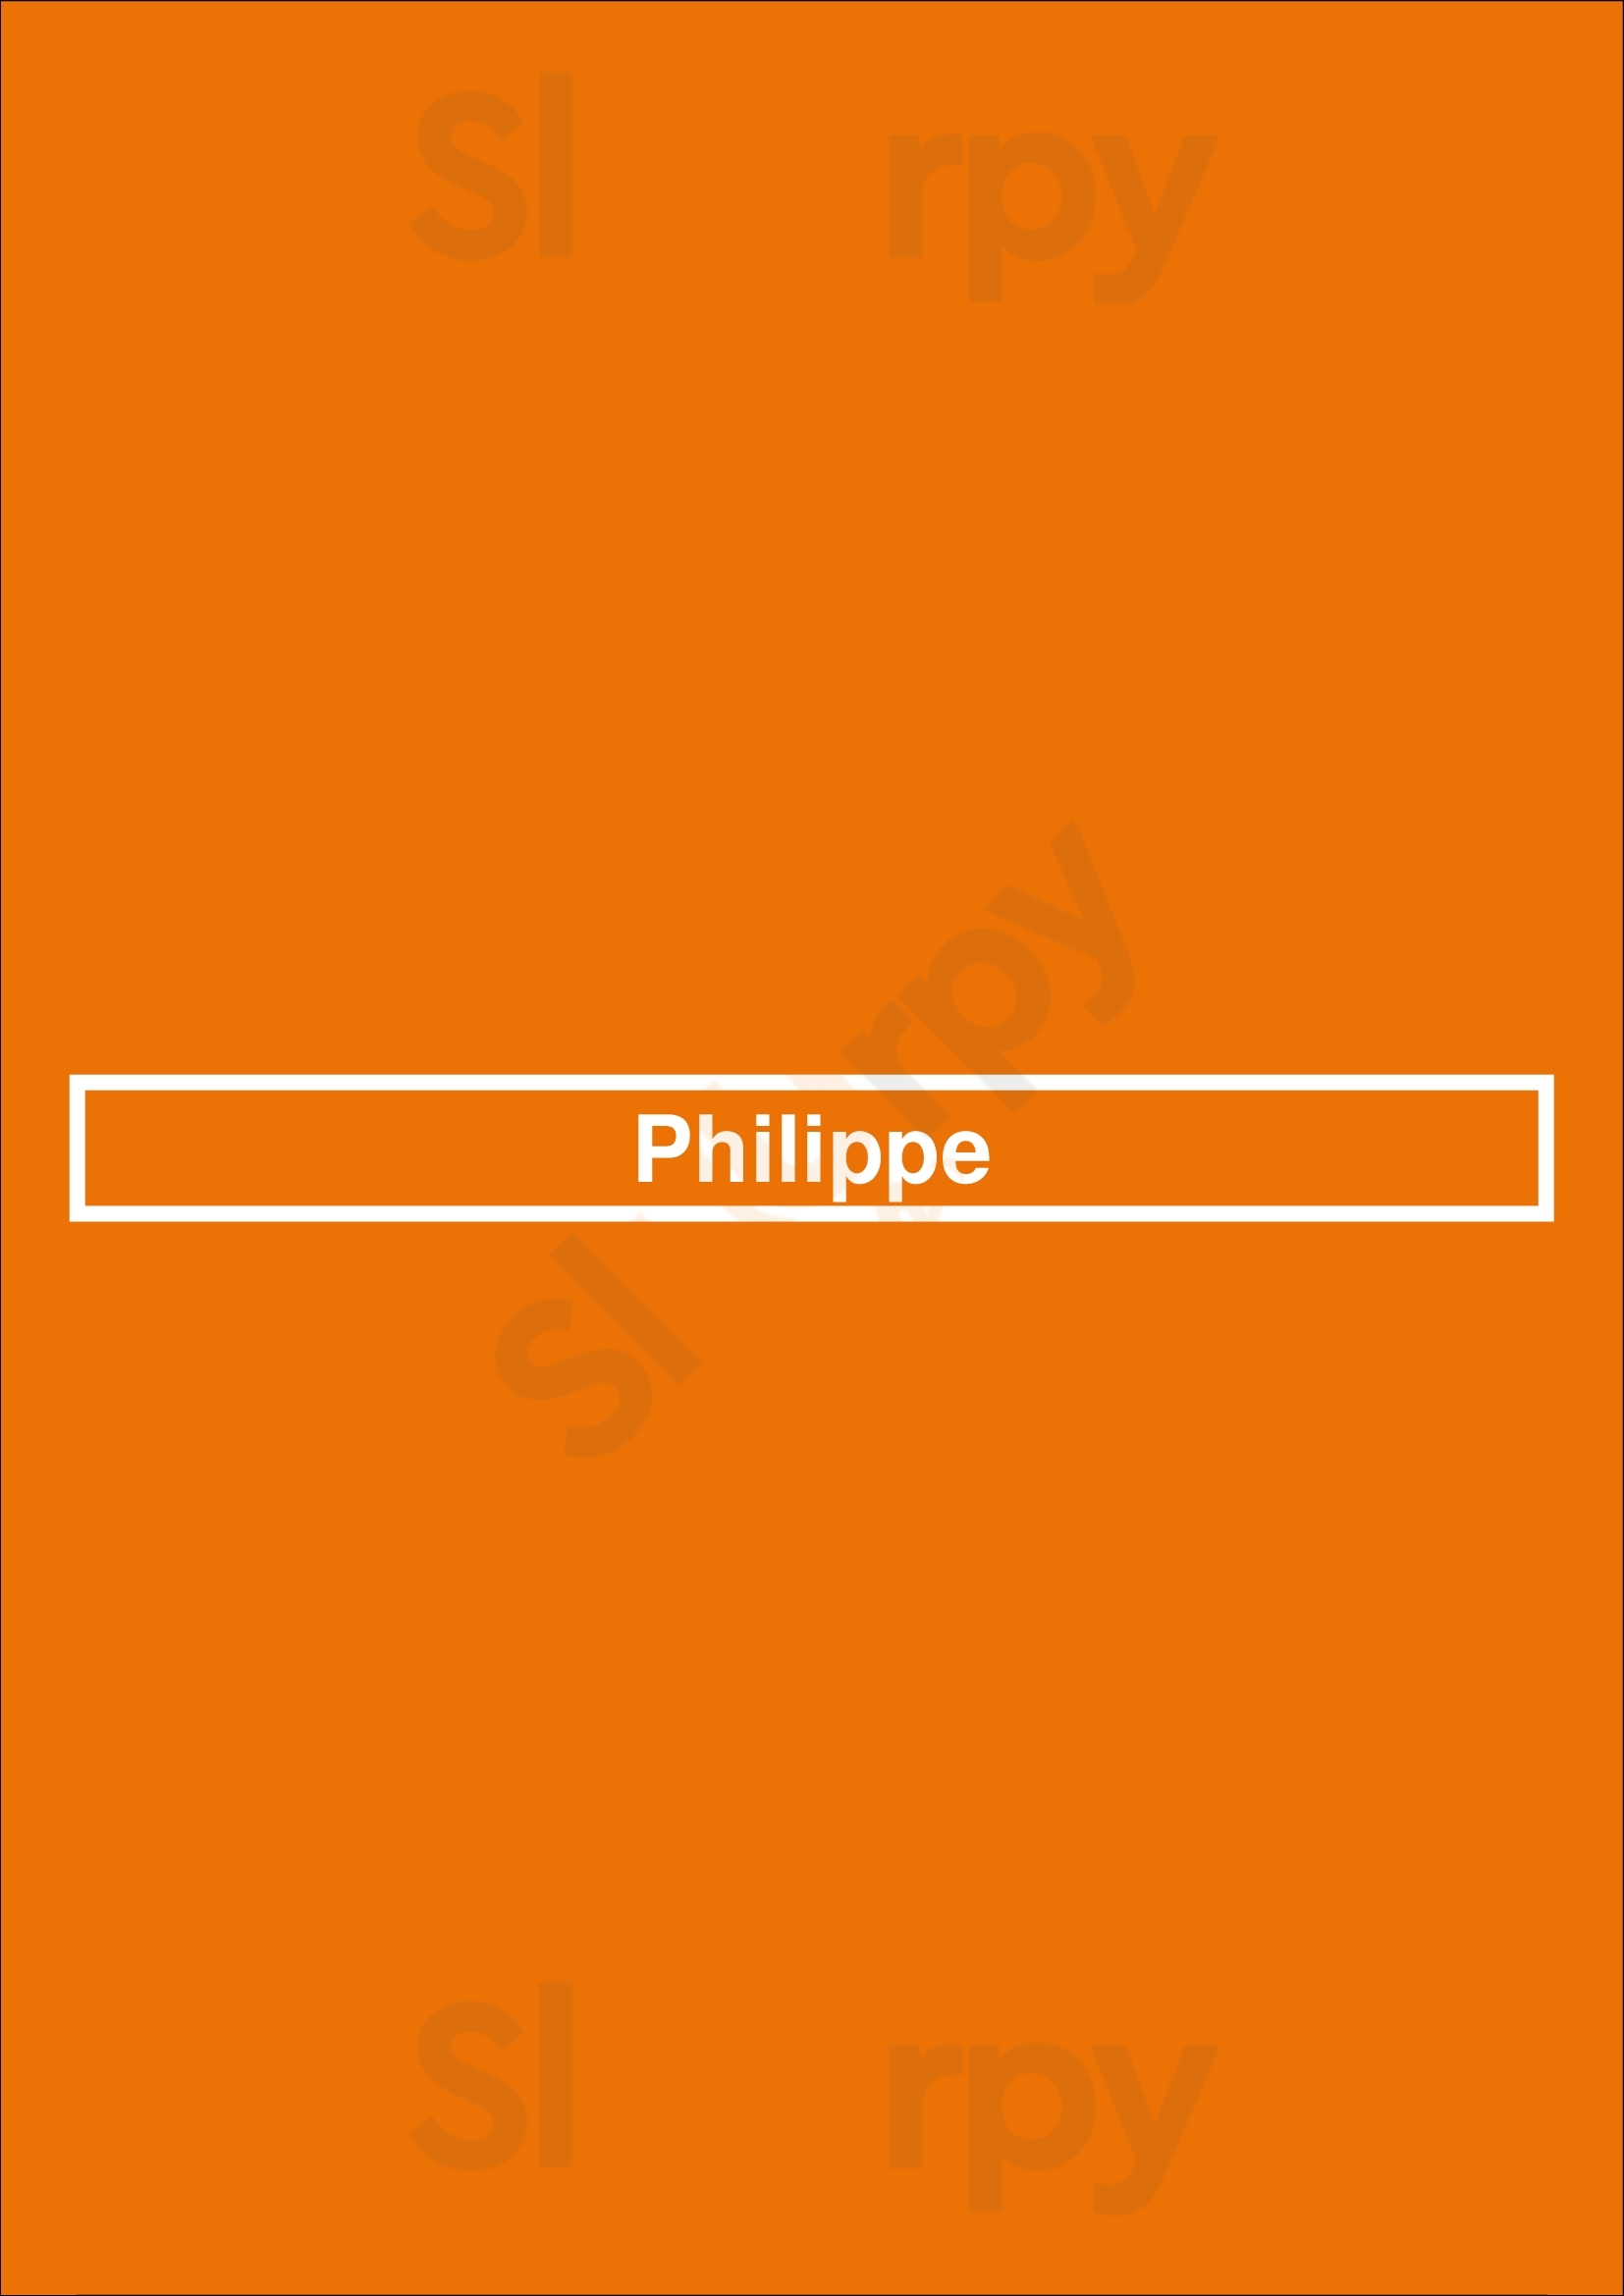 Philippe Melbourne Menu - 1